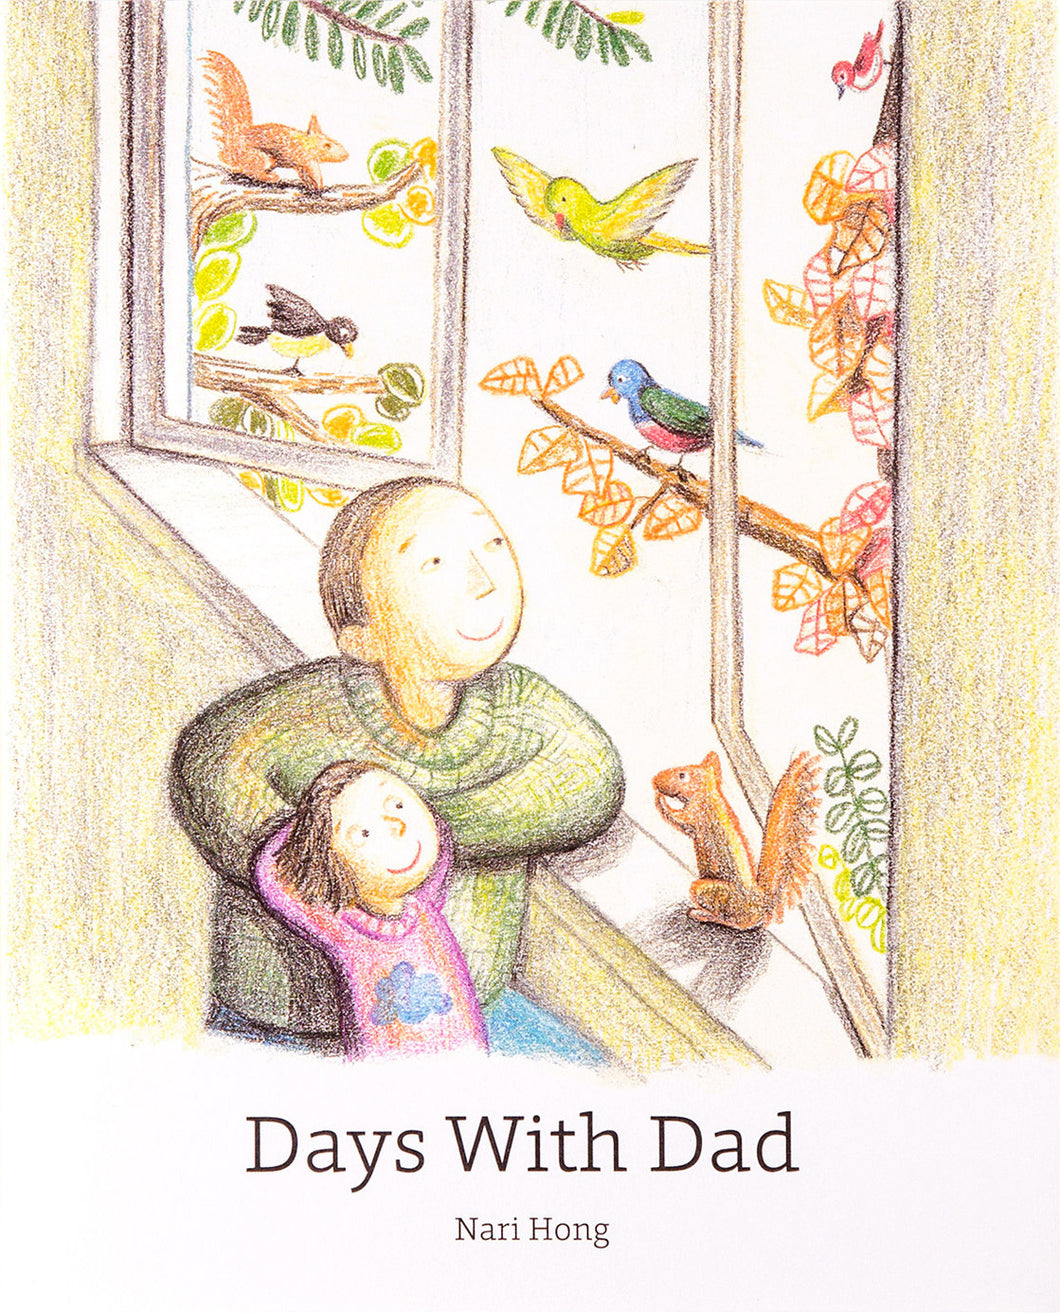 Days With Dad by Nari Hong